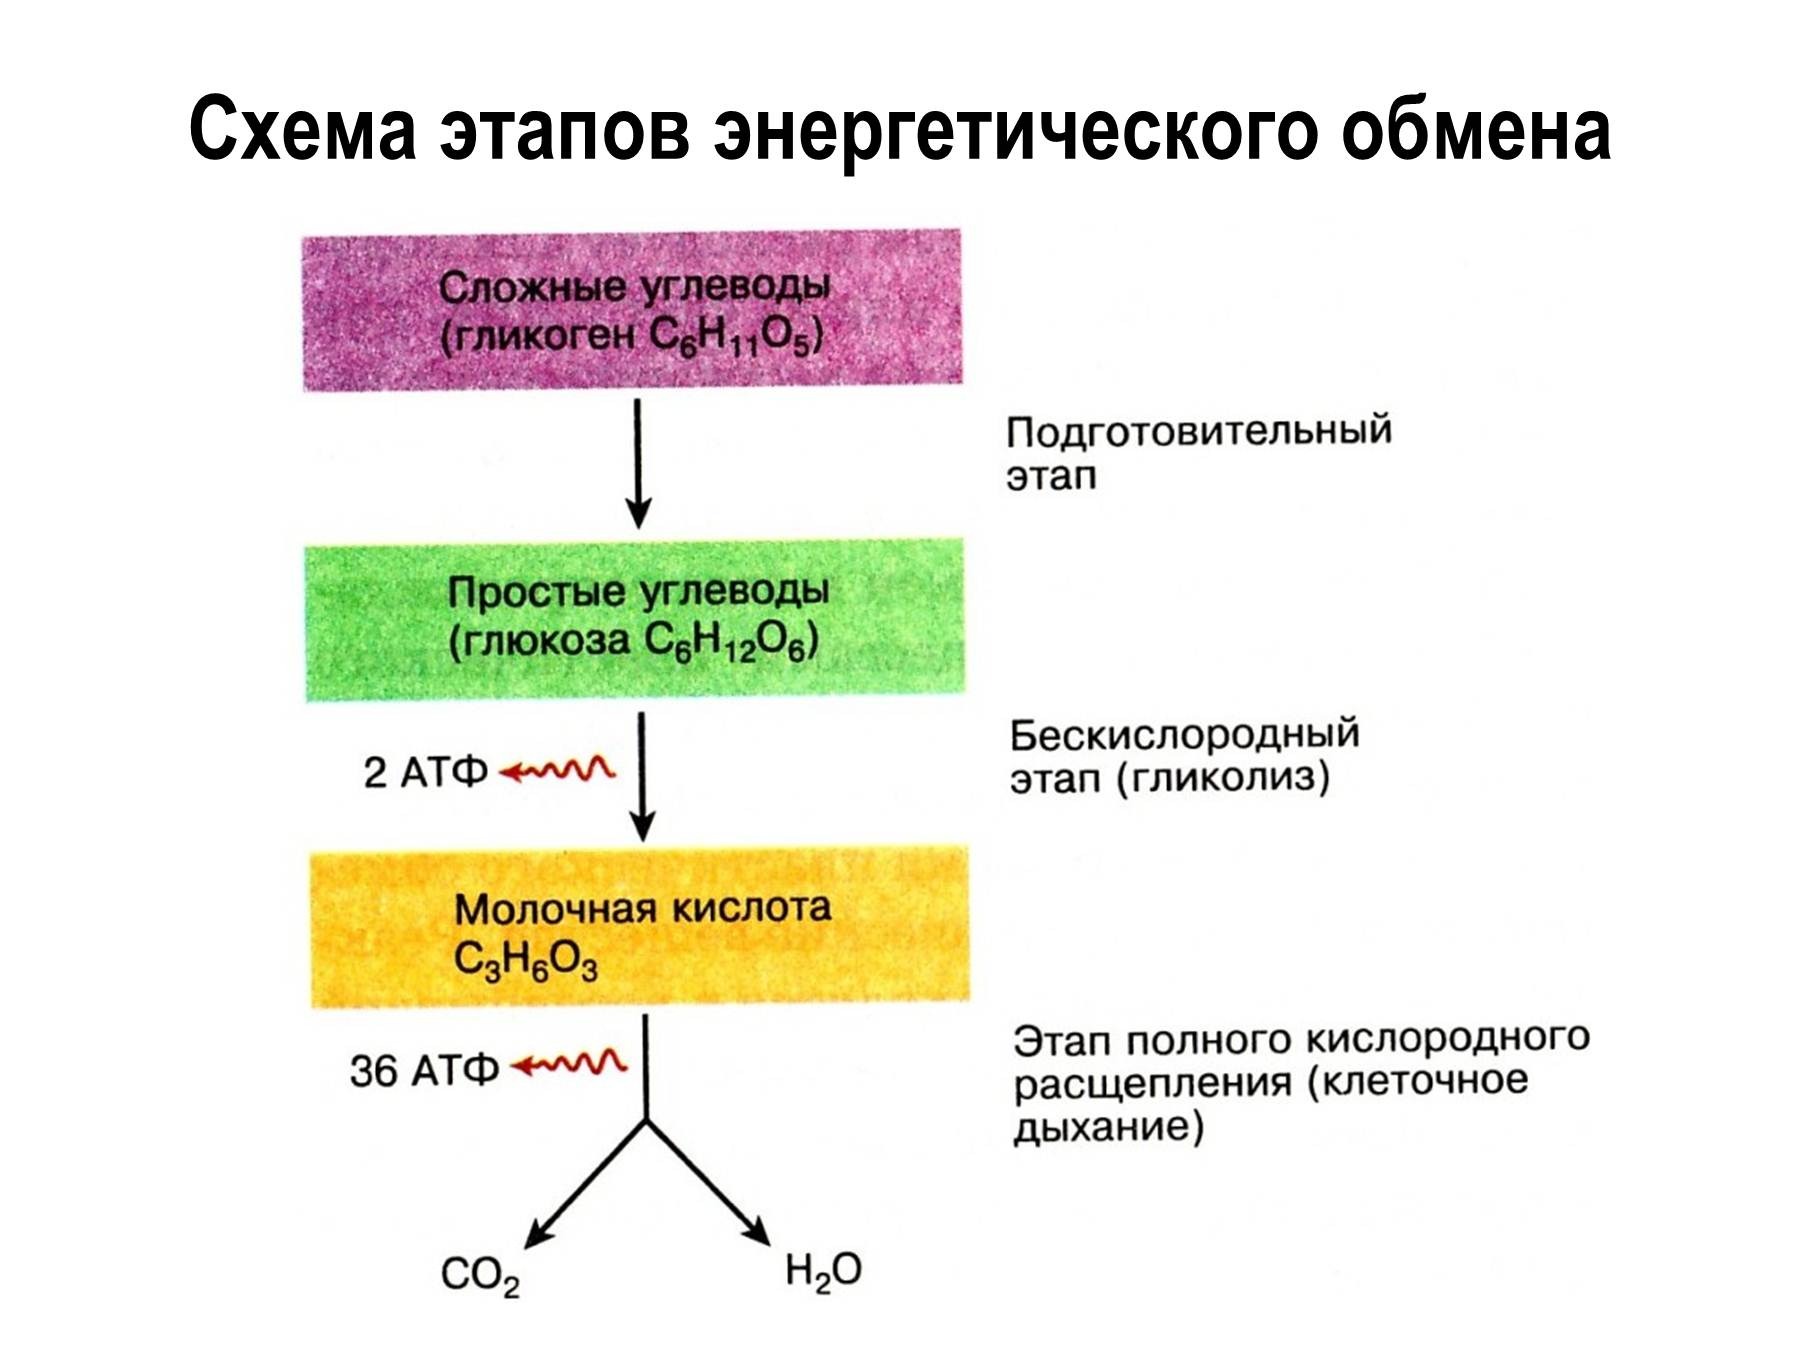 Атф является белком. Этапы энергия обмена веществ схема. Охарактеризуйте этапы энергетического обмена..